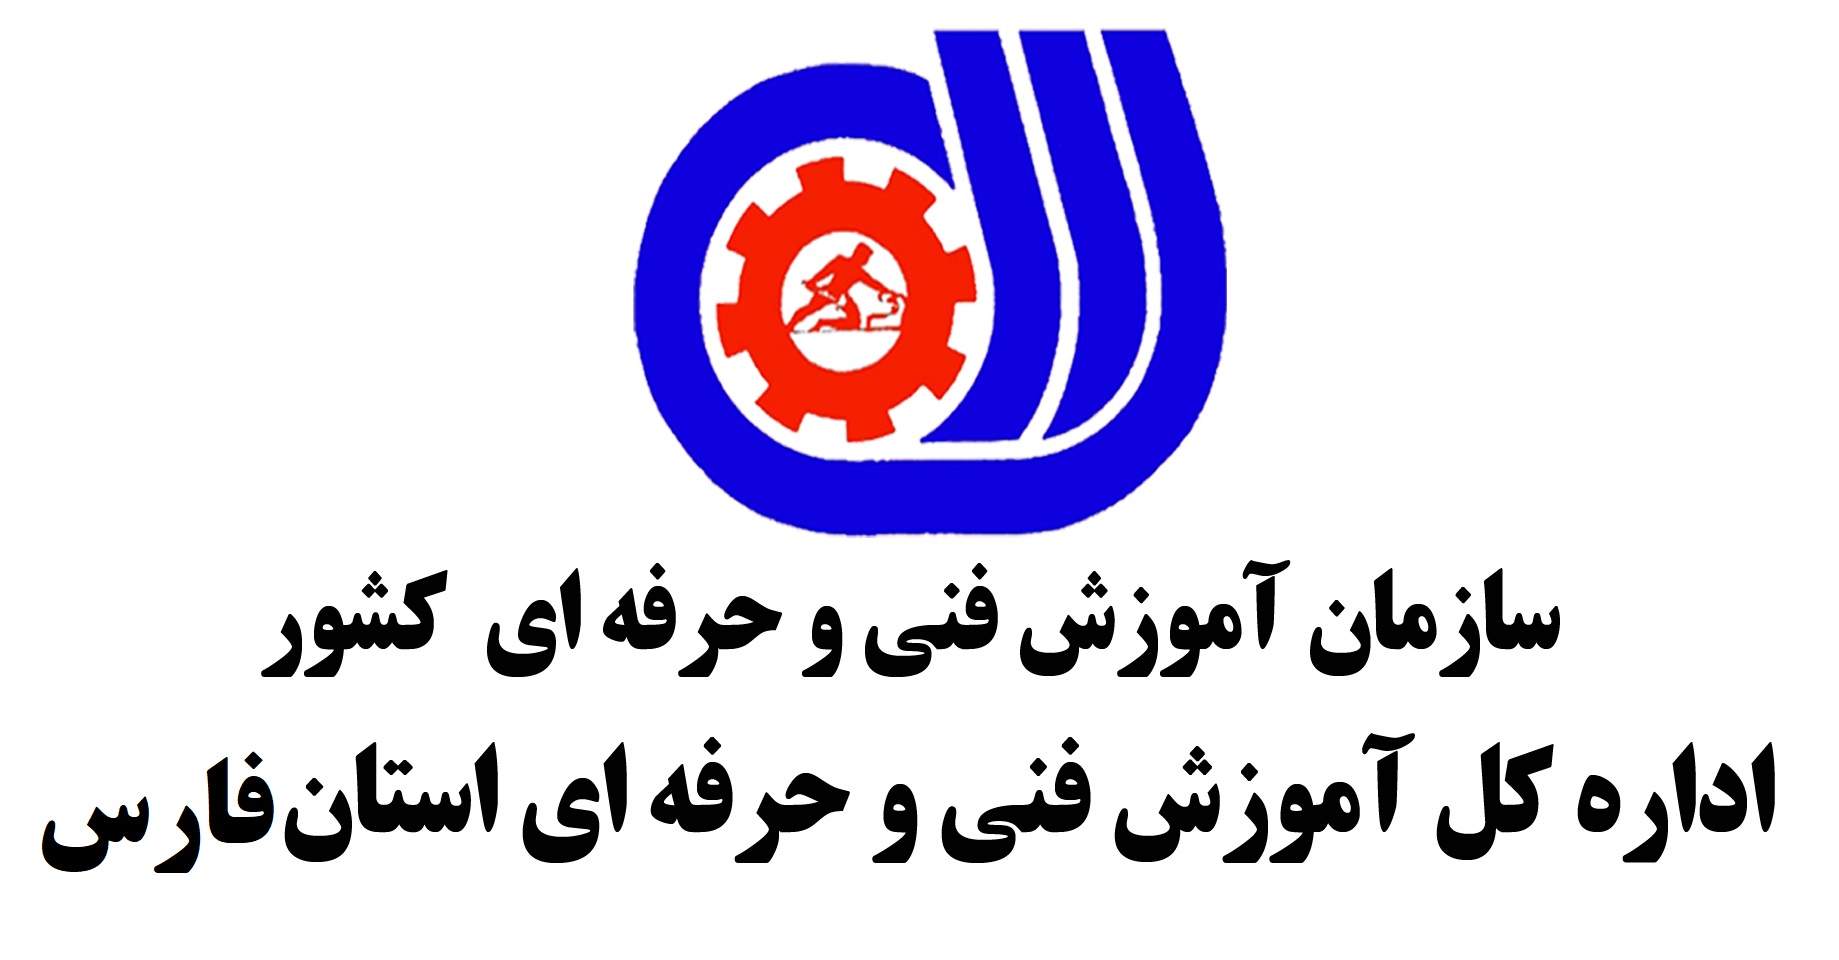 اداره کل فنی و حرفه ای استان فارس